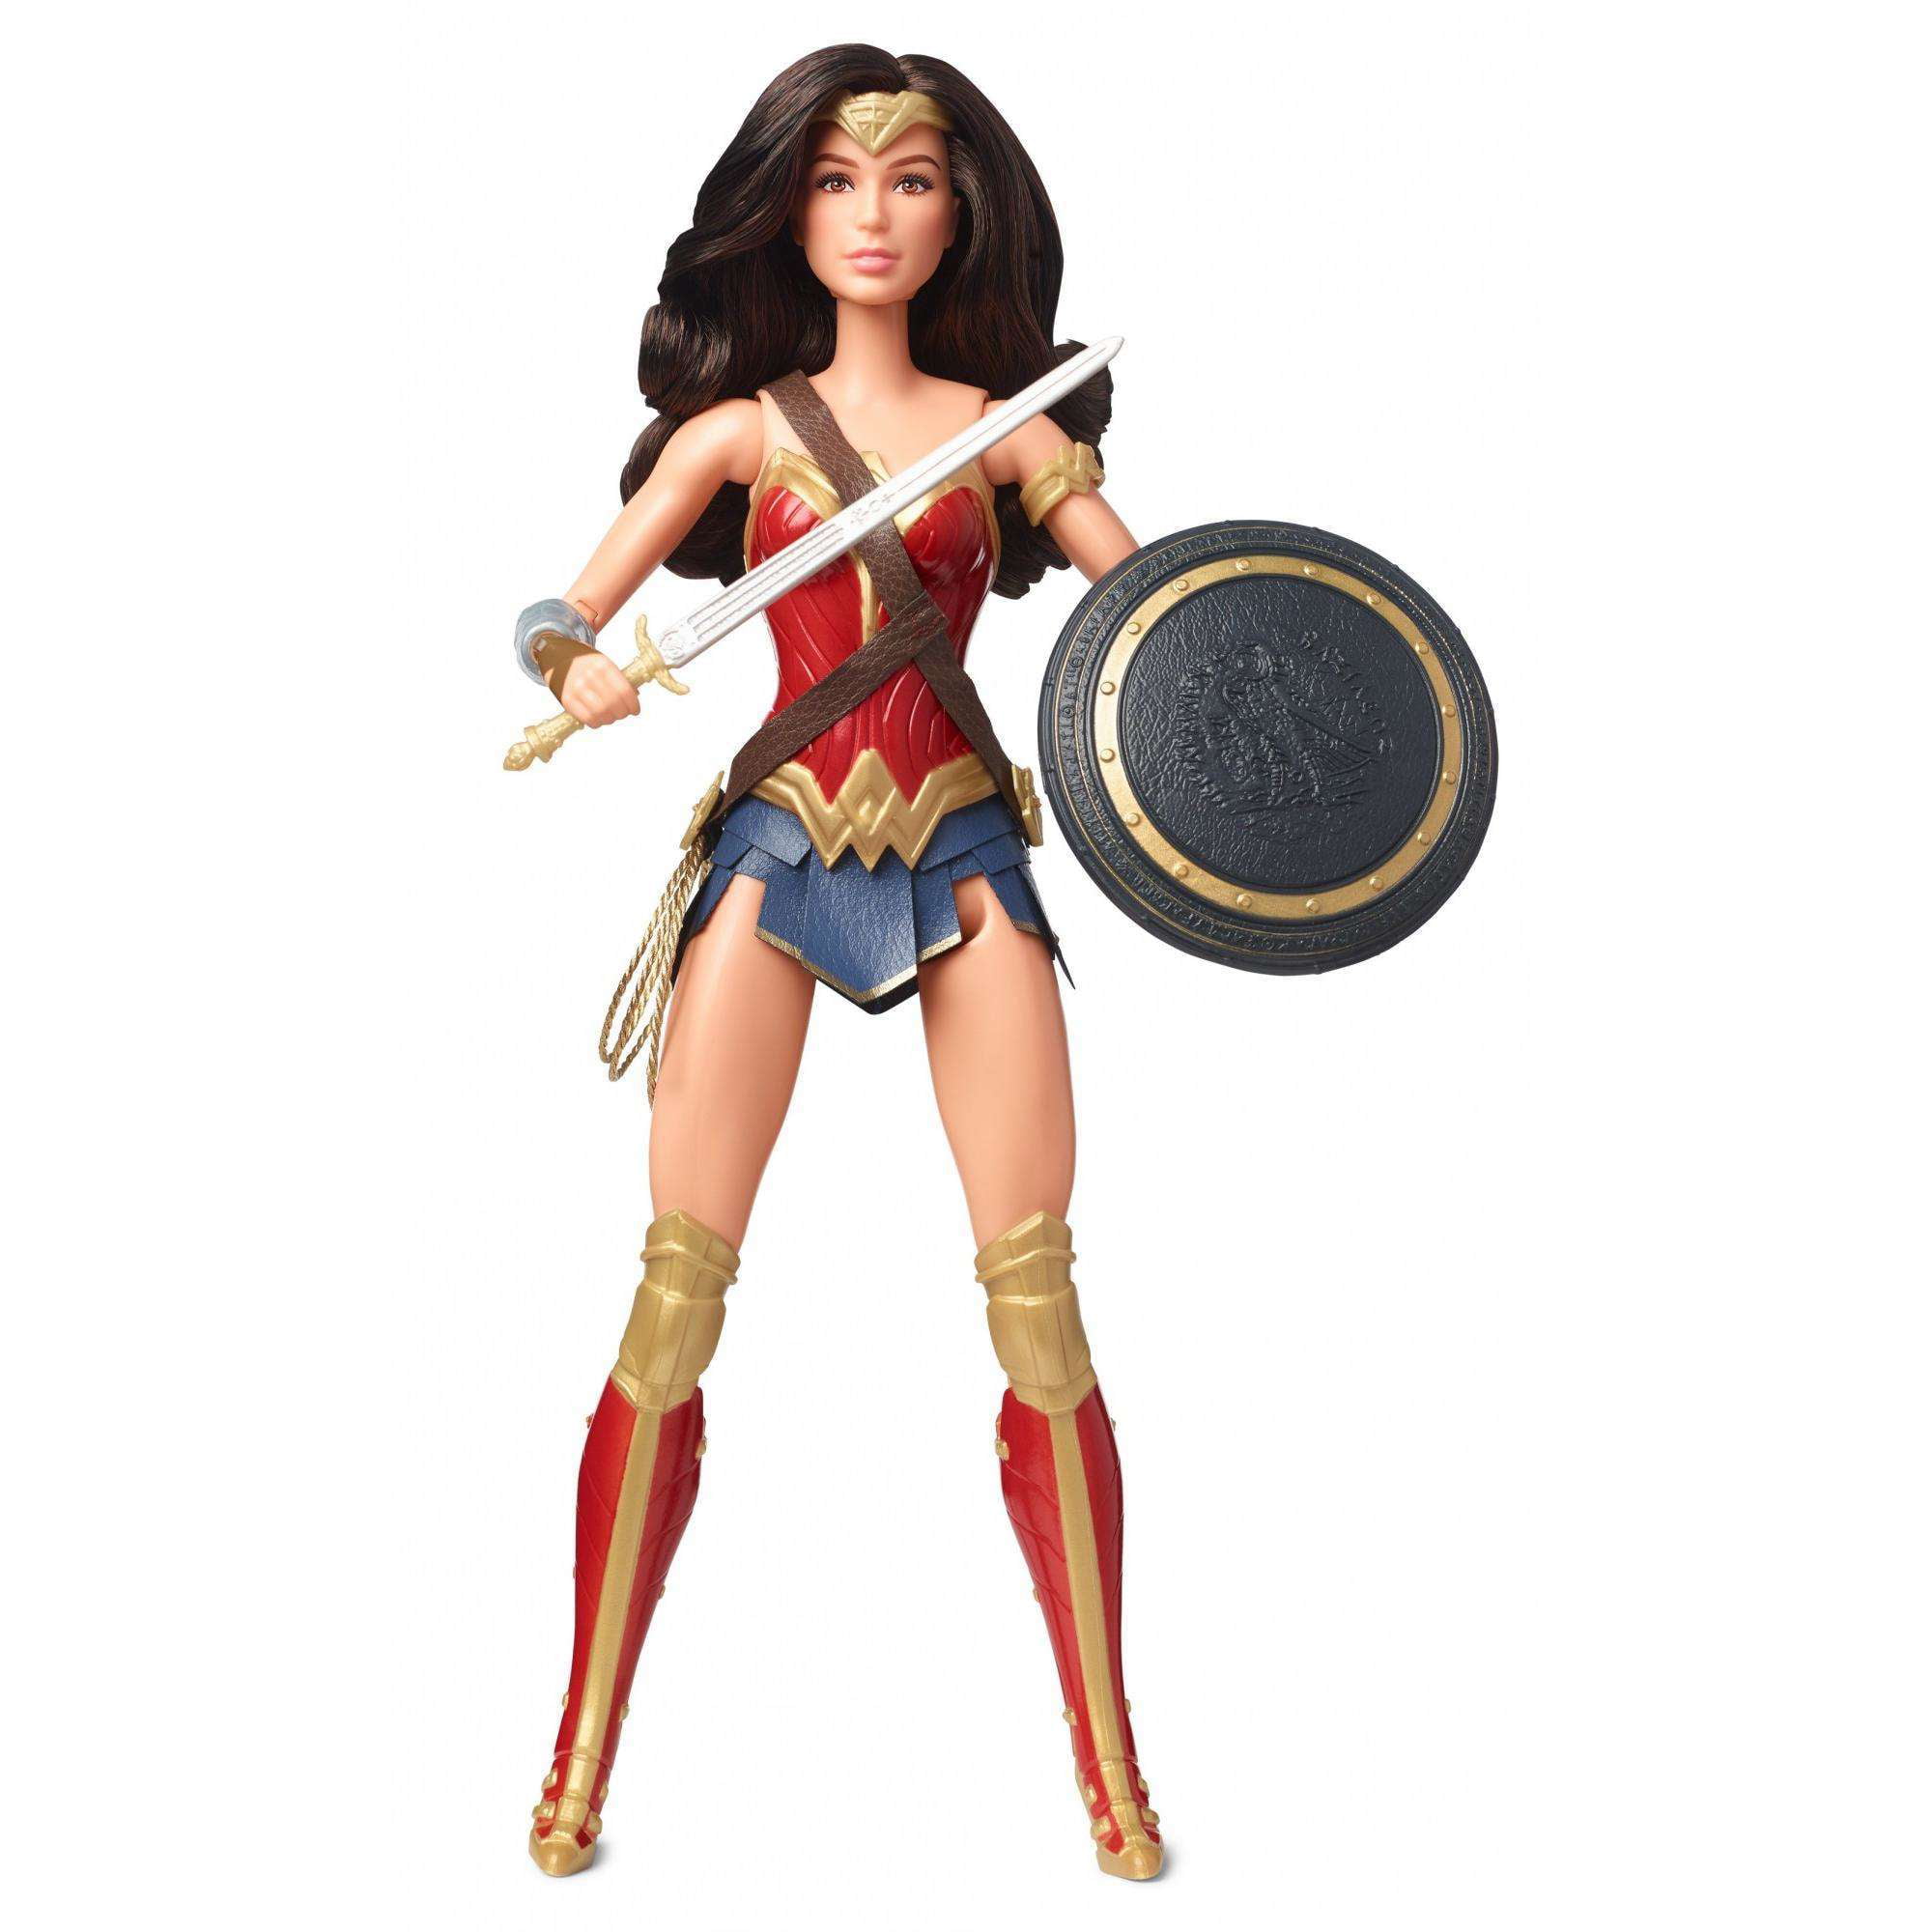 Barbie Signature Justice League Wonder Woman Doll Figure Toy Mattel 